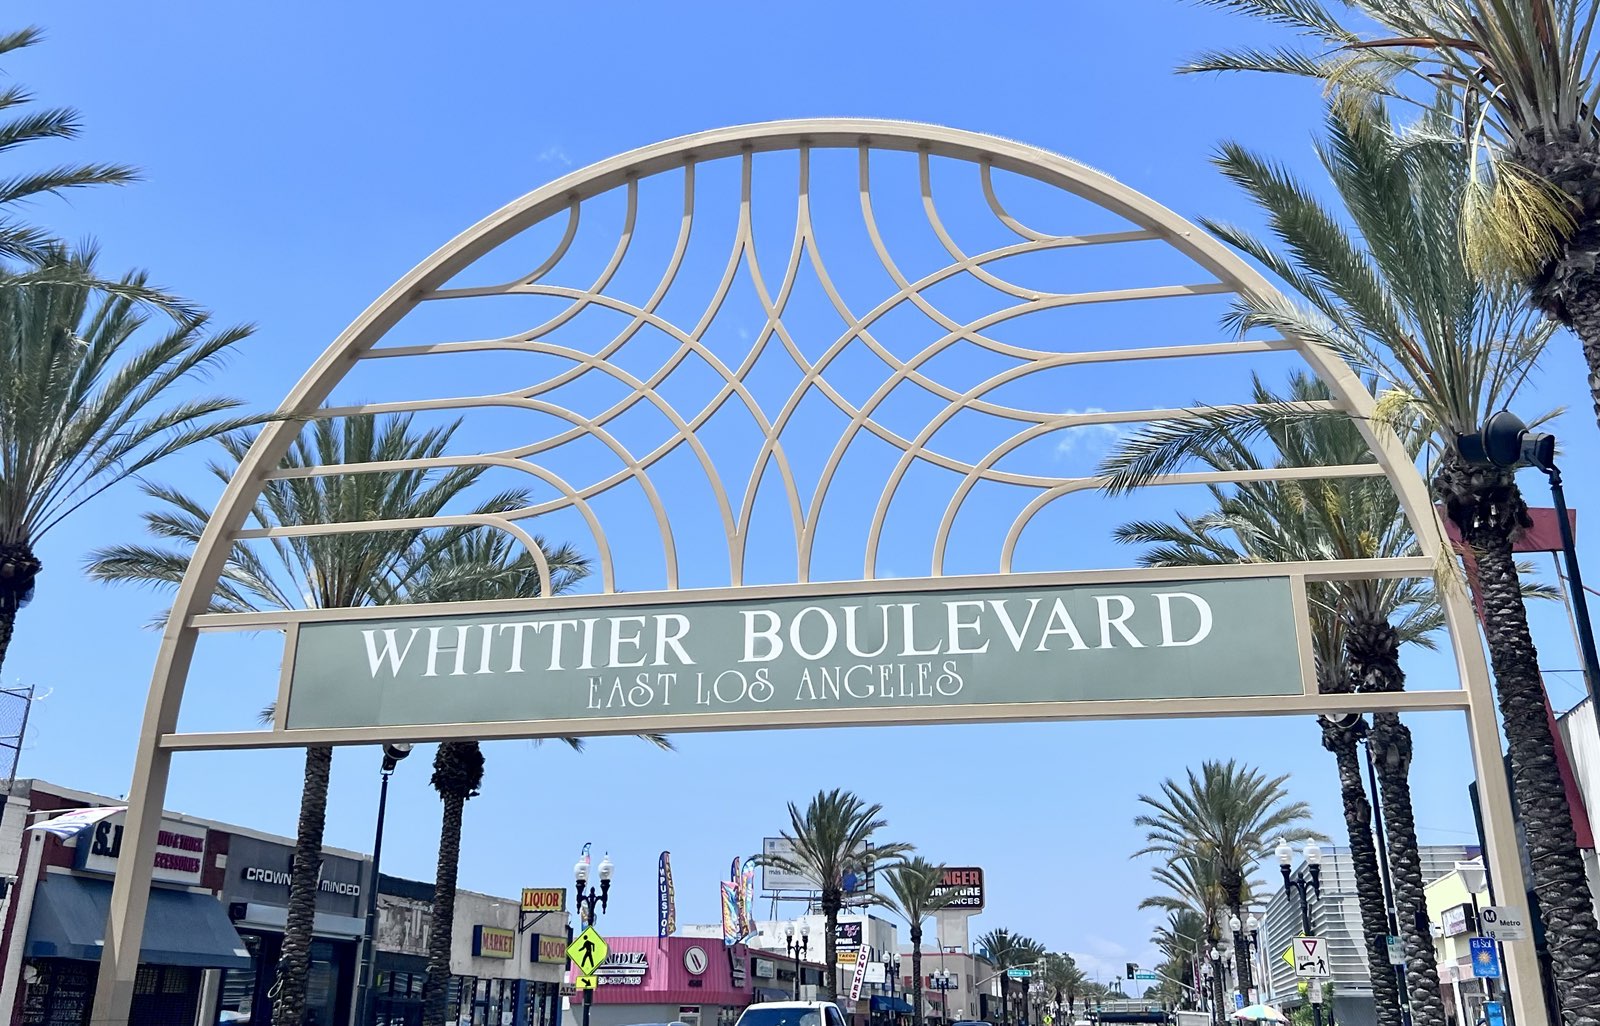 Whittier Blvd. in East Los Angeles